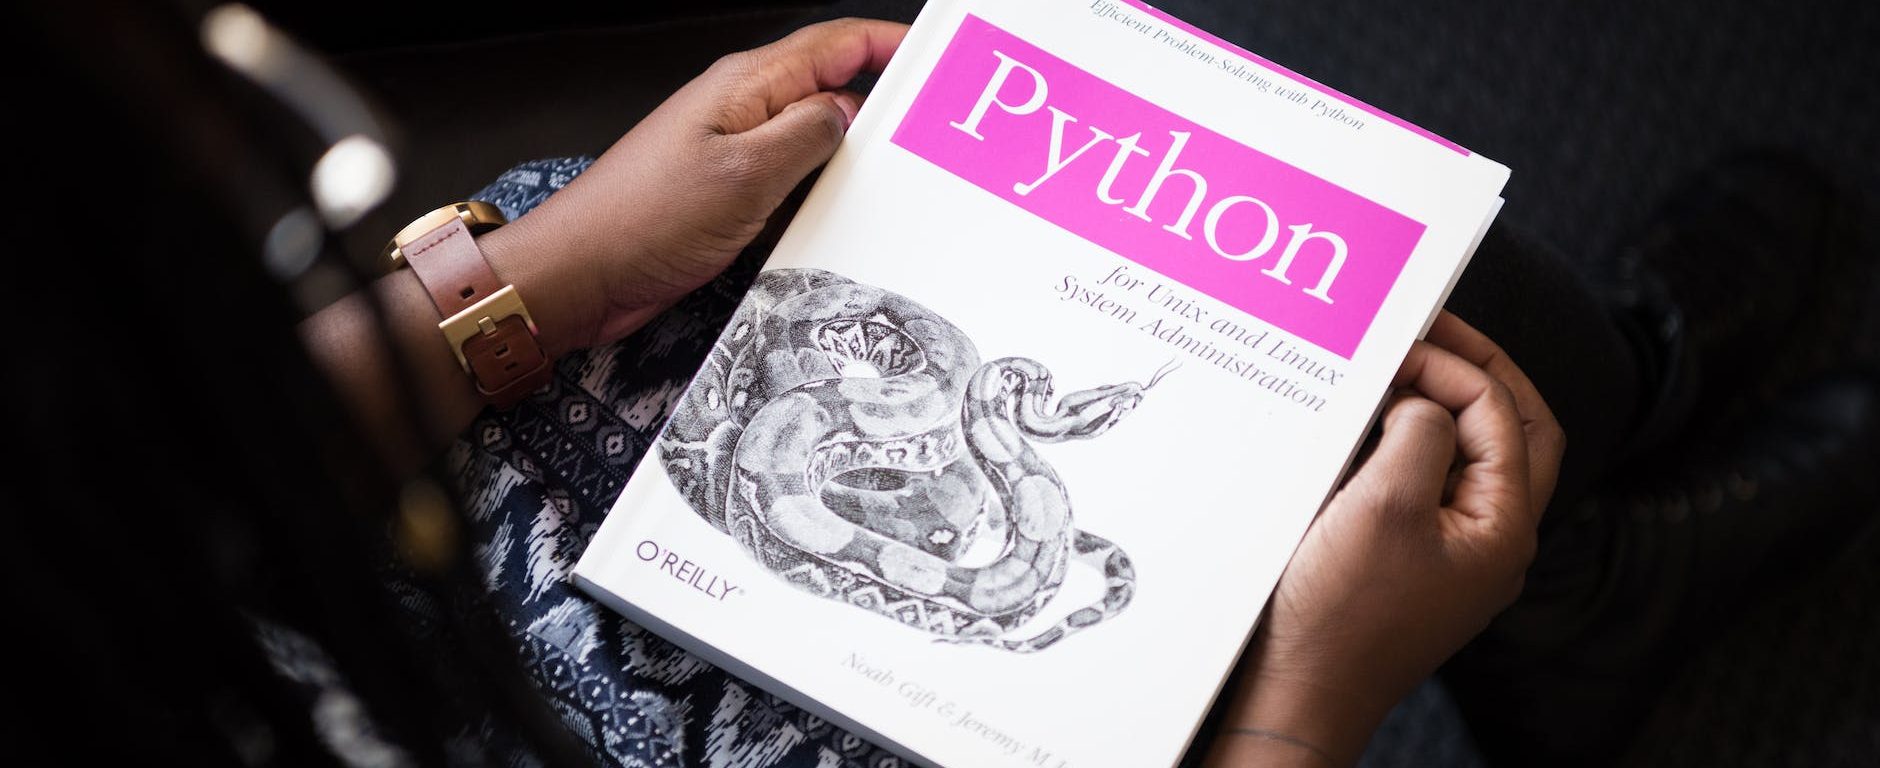 python book